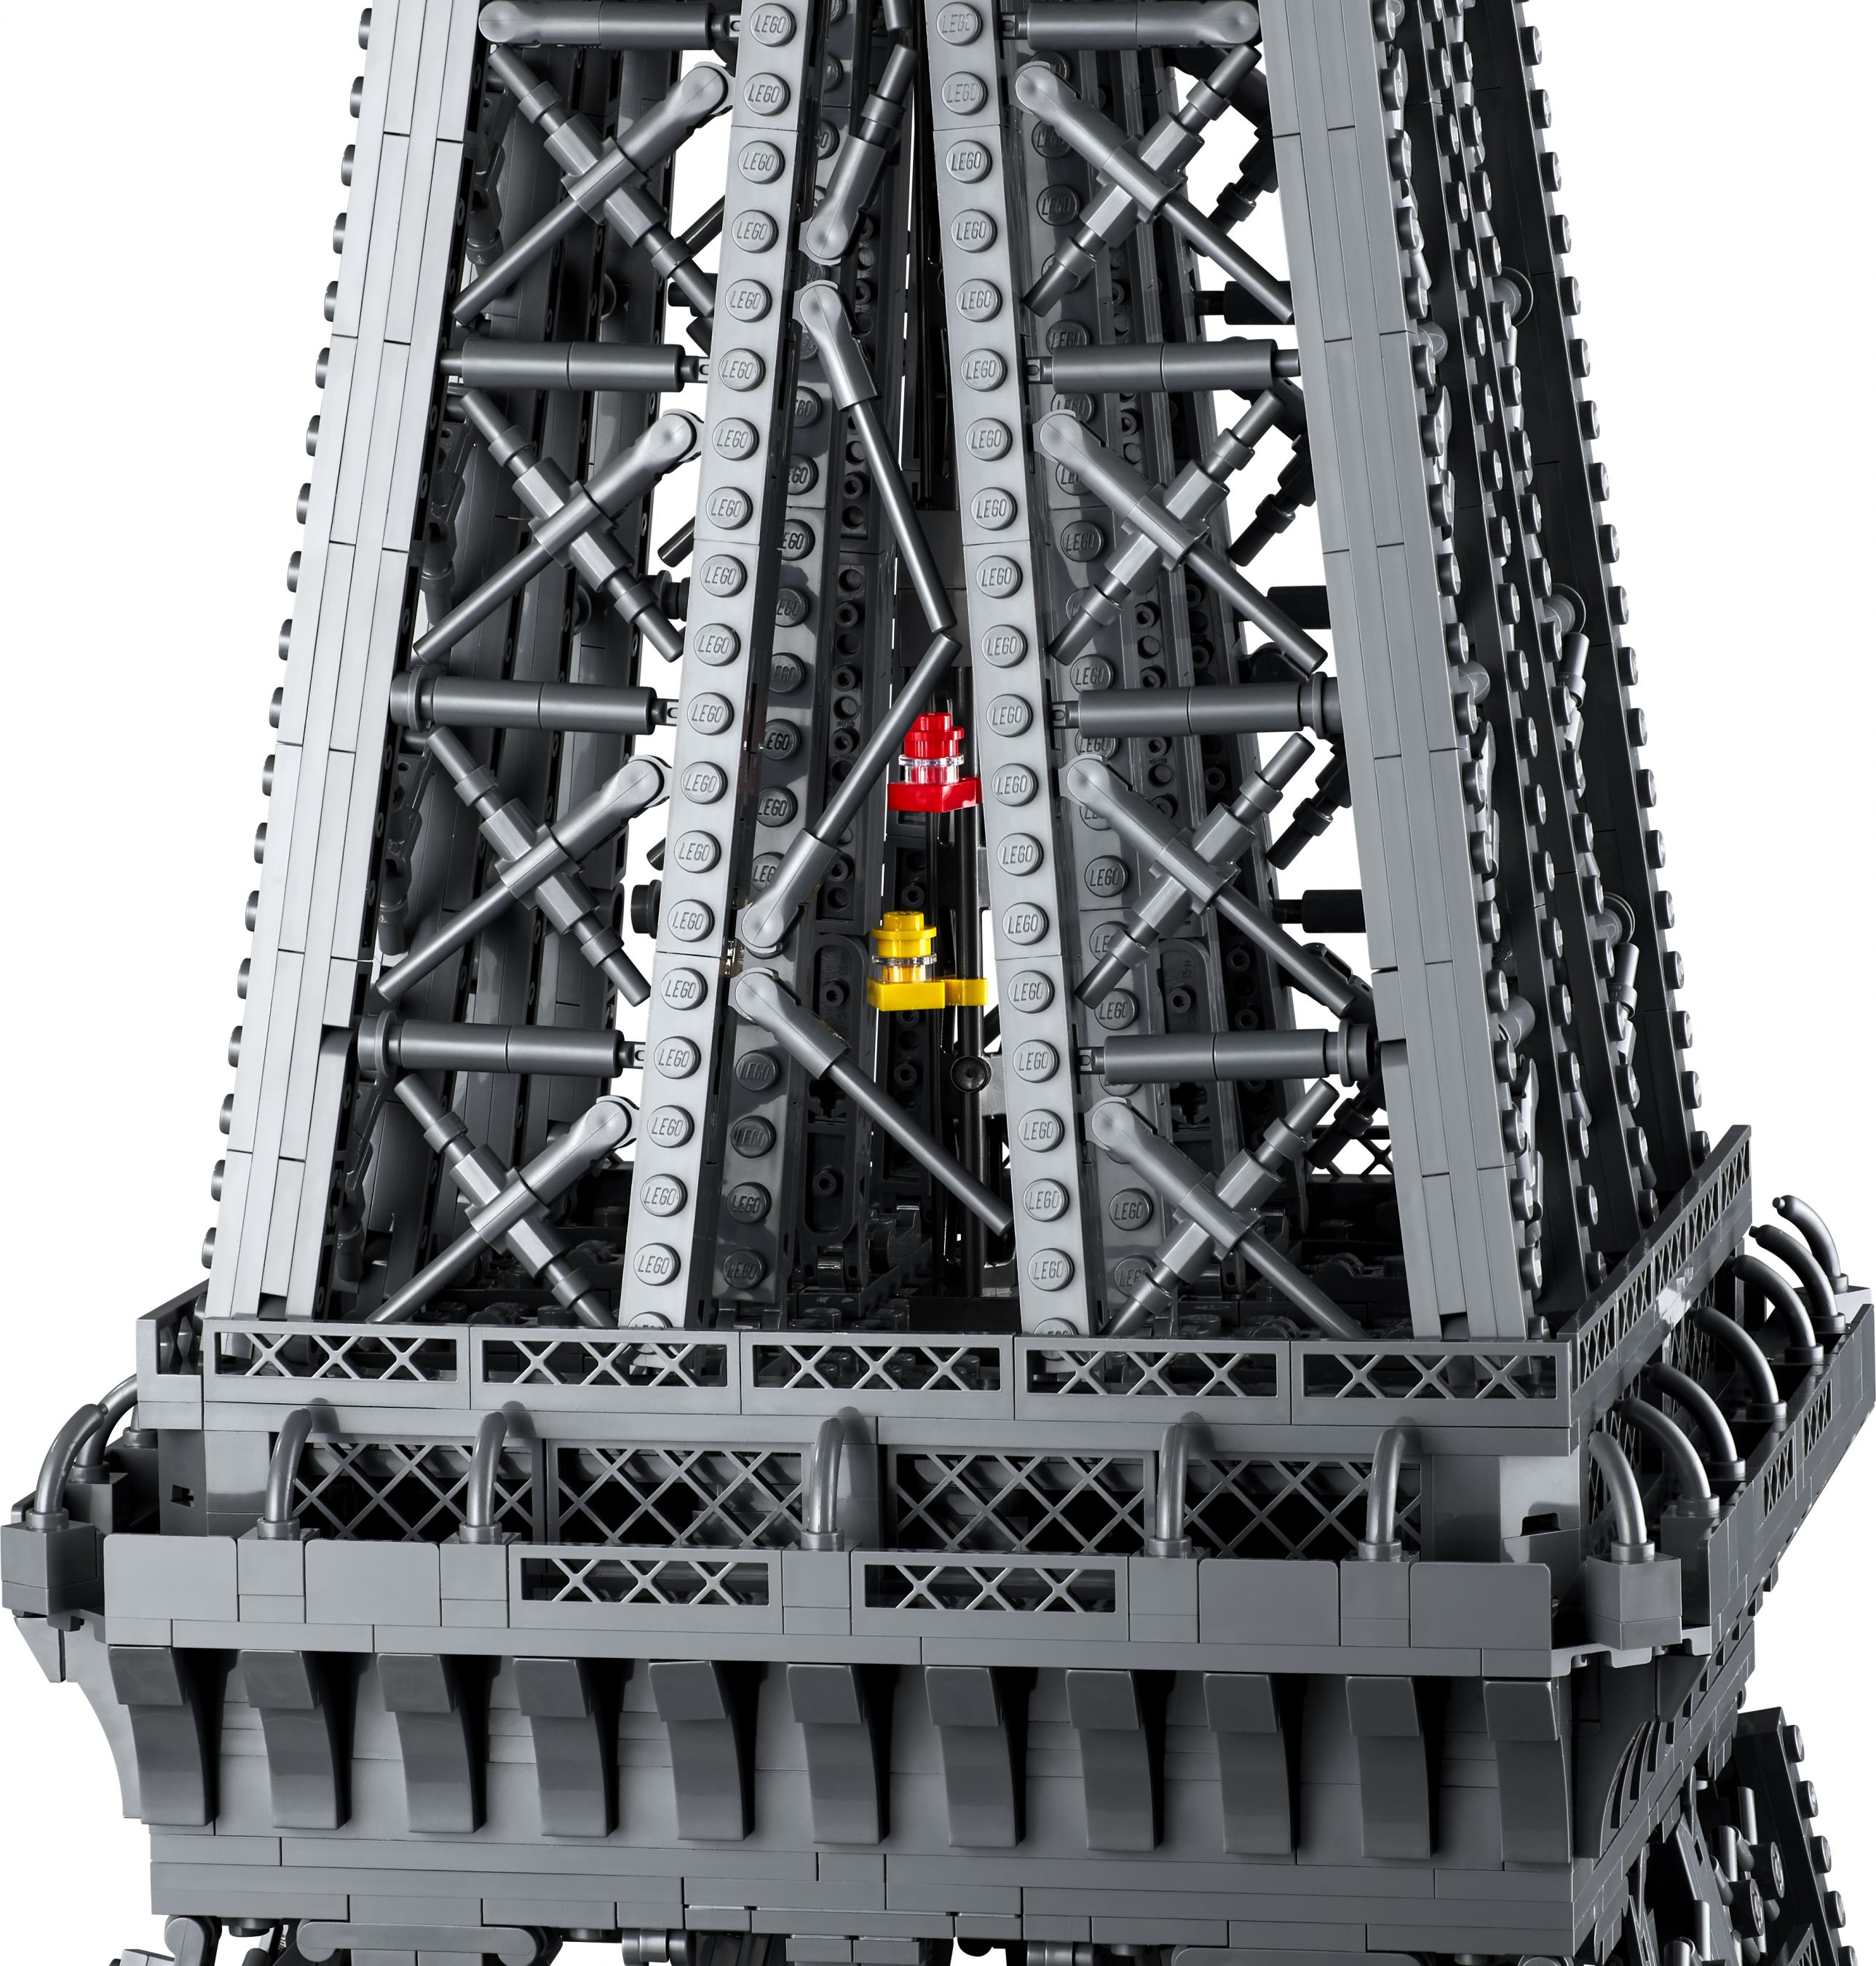 LEGO Advanced Models 10307 Eiffelturm Paris LEGO_10307_alt6.jpg